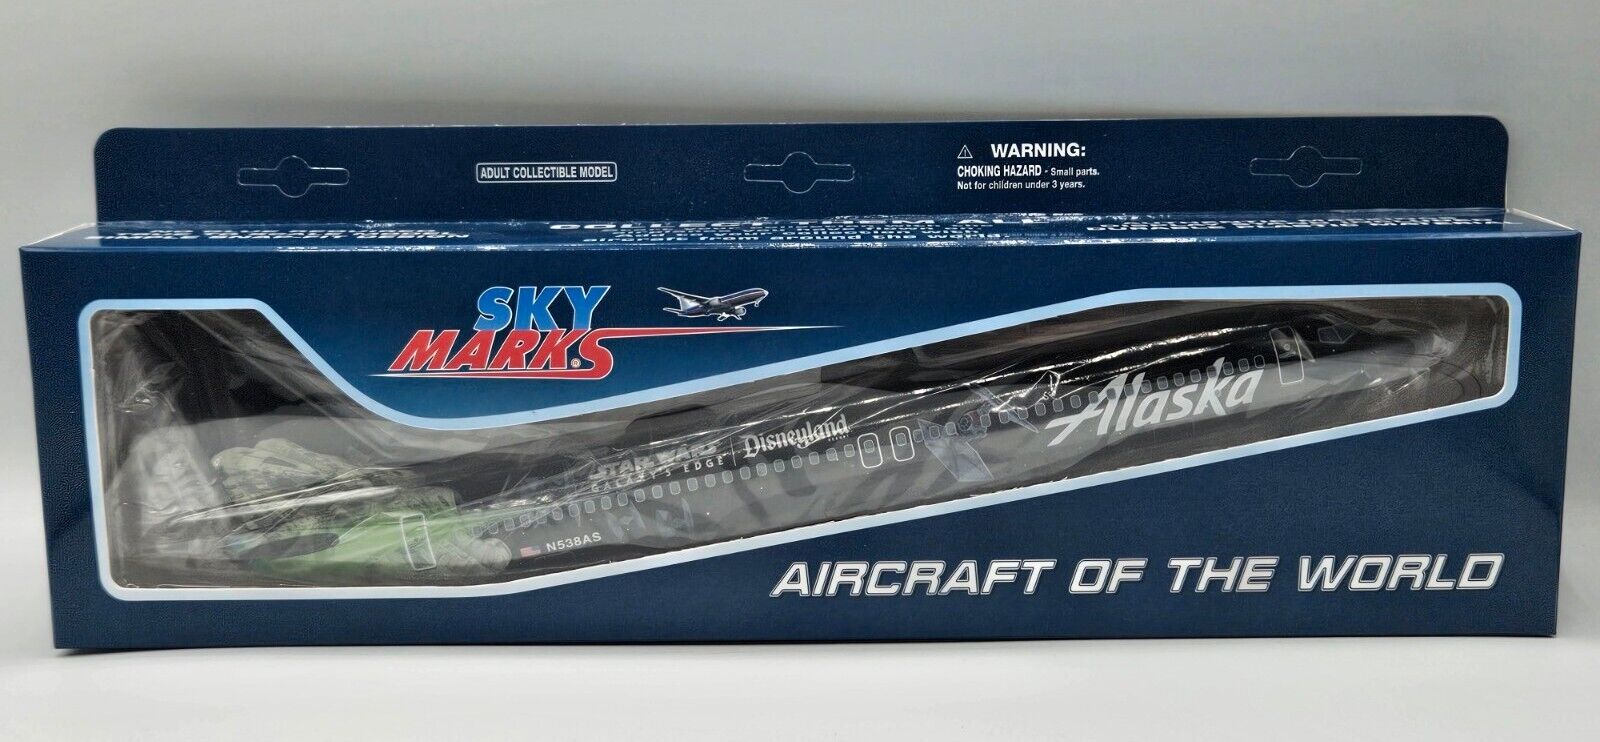 Skymarks Alaska Airlines Star Wars Disneyland Boeing 737-800 1/130 With Wheels